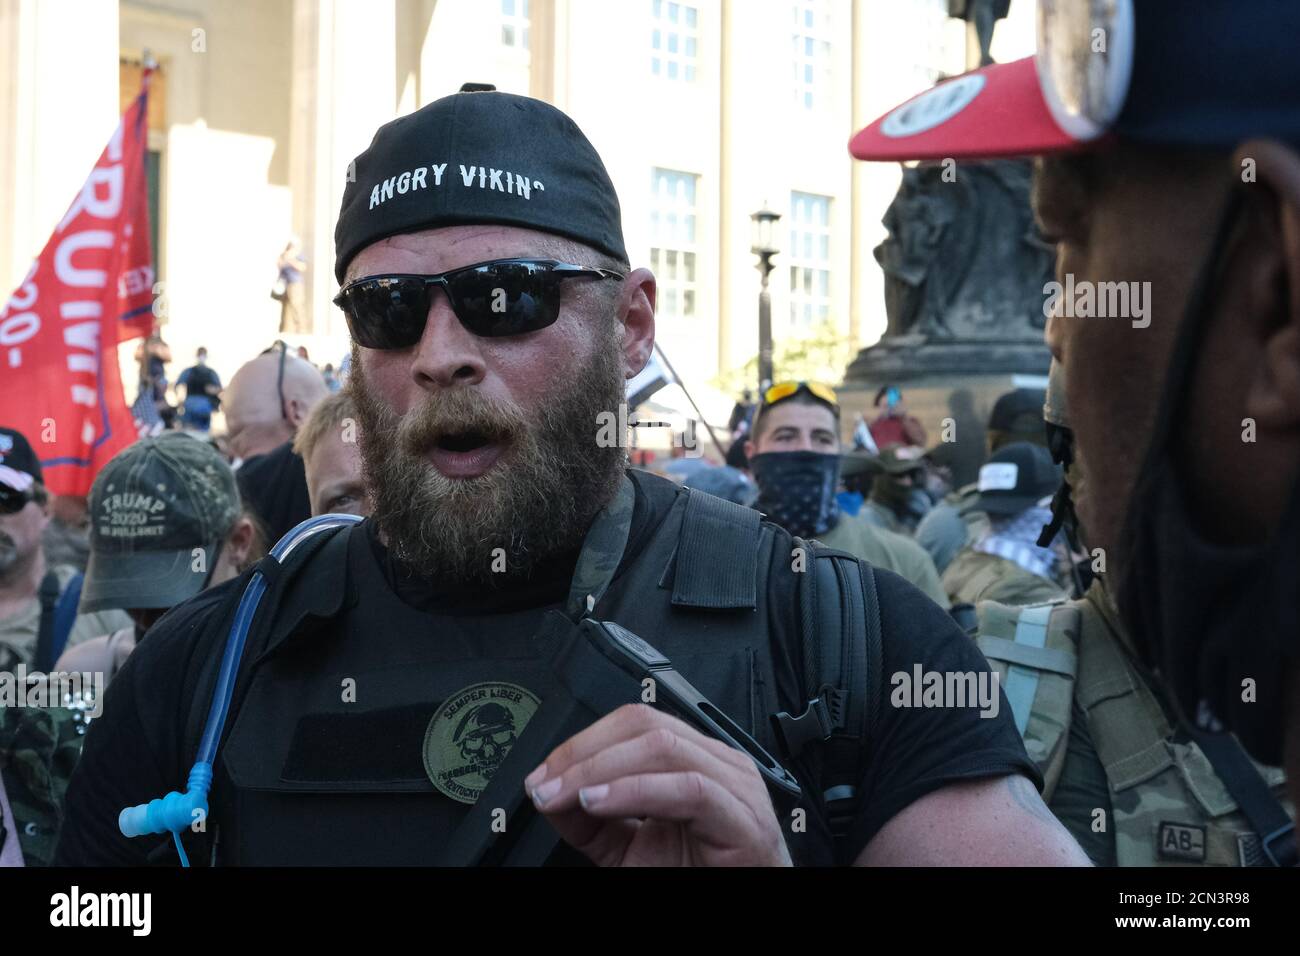 Louisville, KY, USA. September 2020. Dylan Stevens von der Gruppe Angry Viking engagiert sich mit einem Protestierenden in der Innenstadt von Louisville, KY. Stockfoto